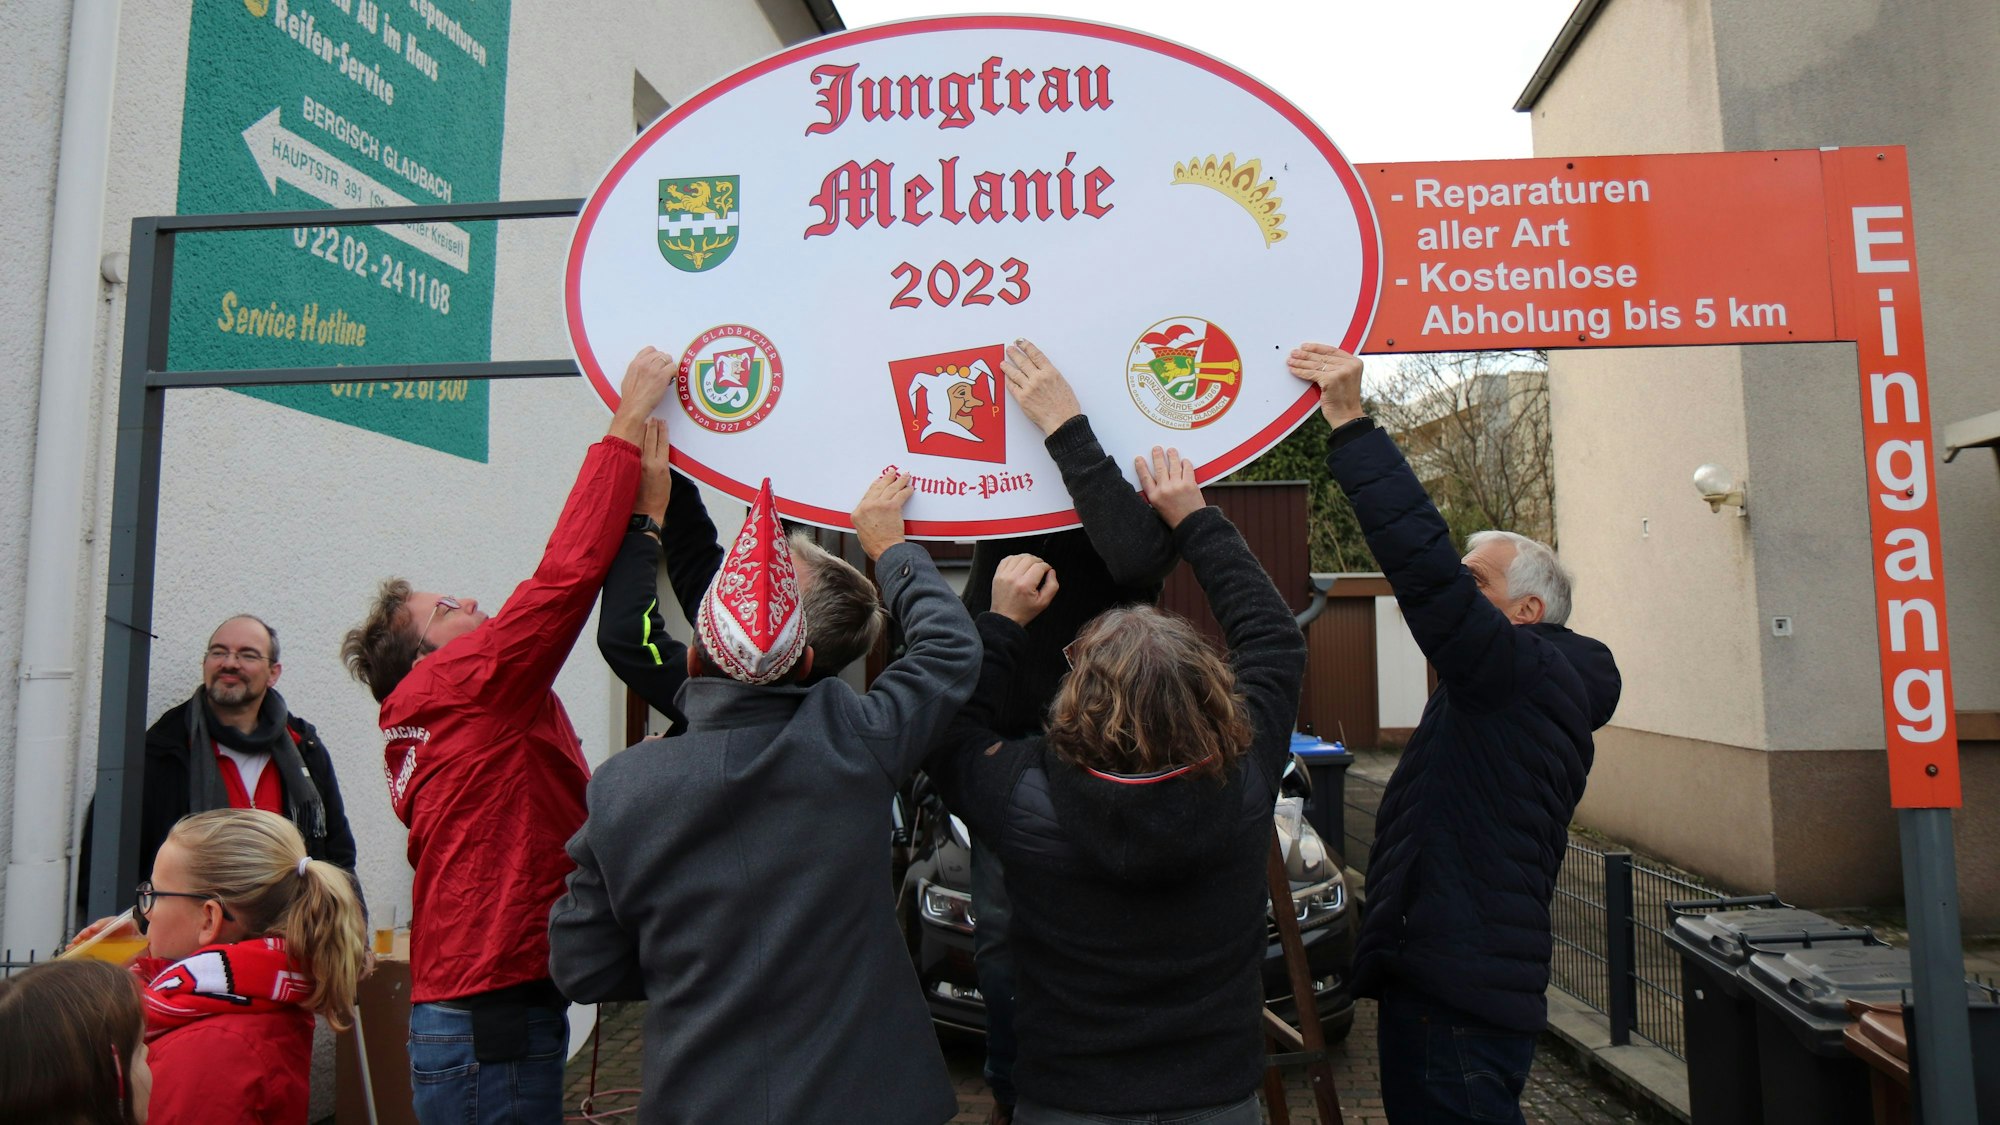 Karnevalisten bringen ein Schild mit der Aufschrift „Jungfrau Melanie 2023“ an.